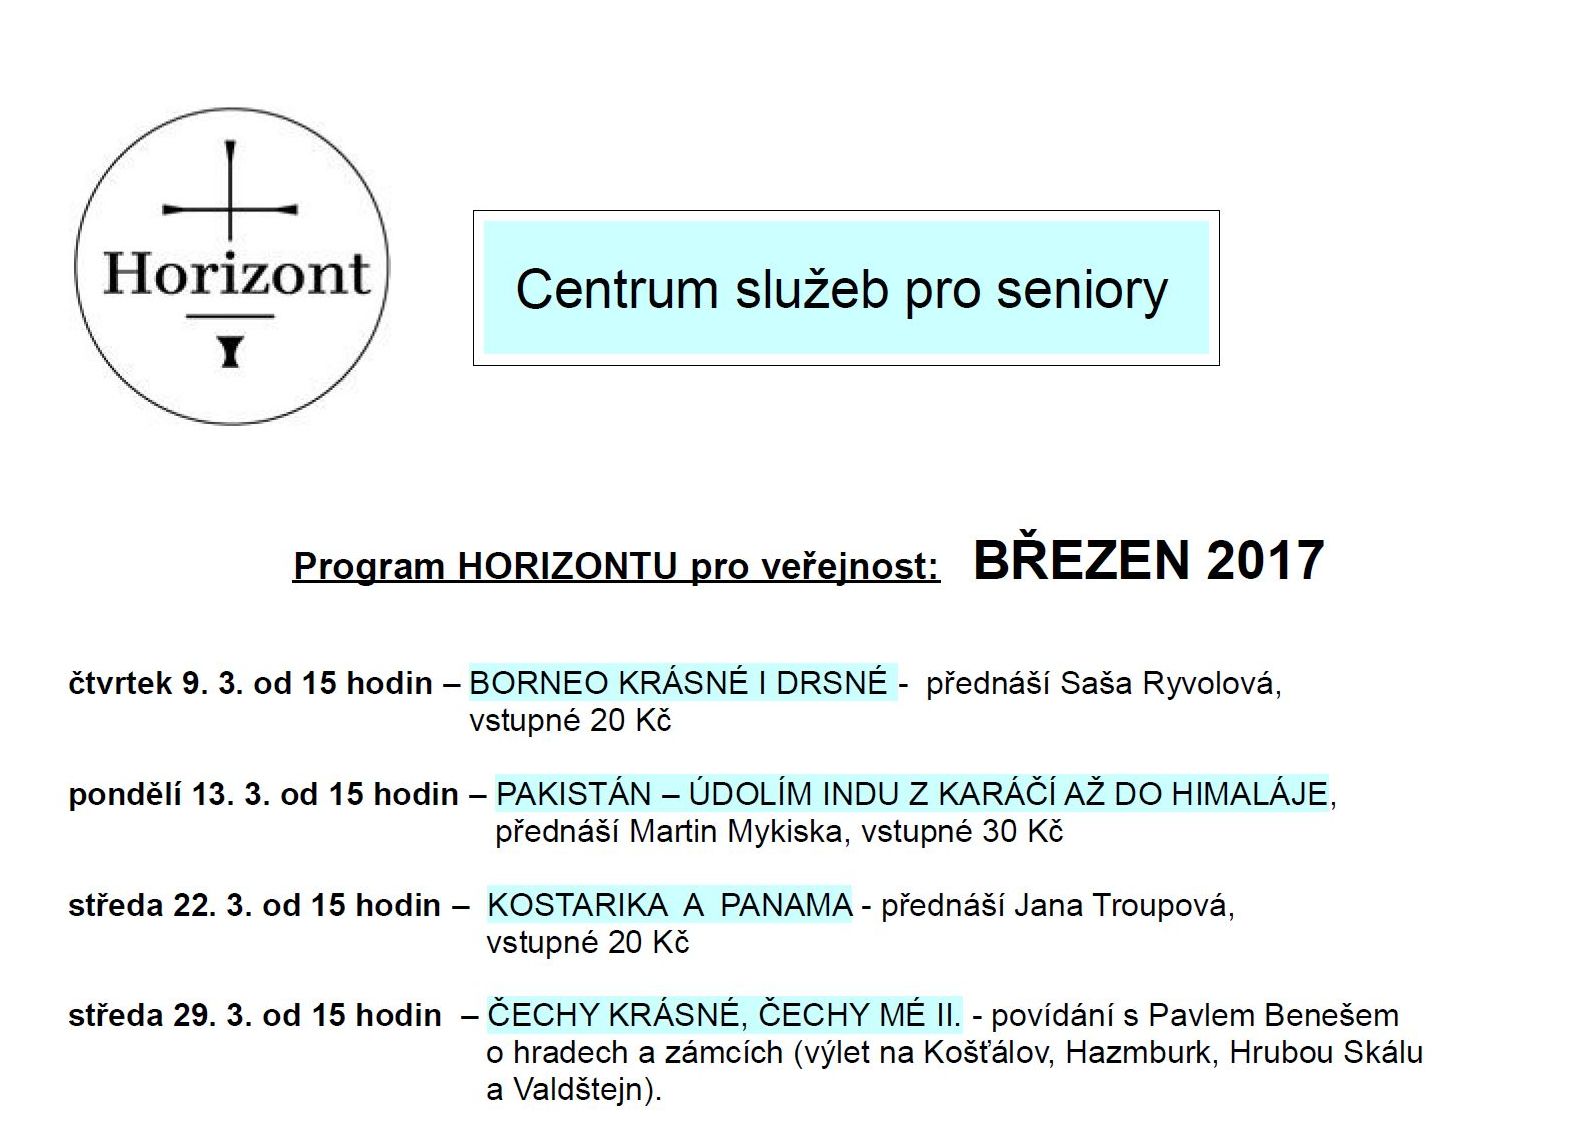 Program Horizont pro veřejnost 03/2017